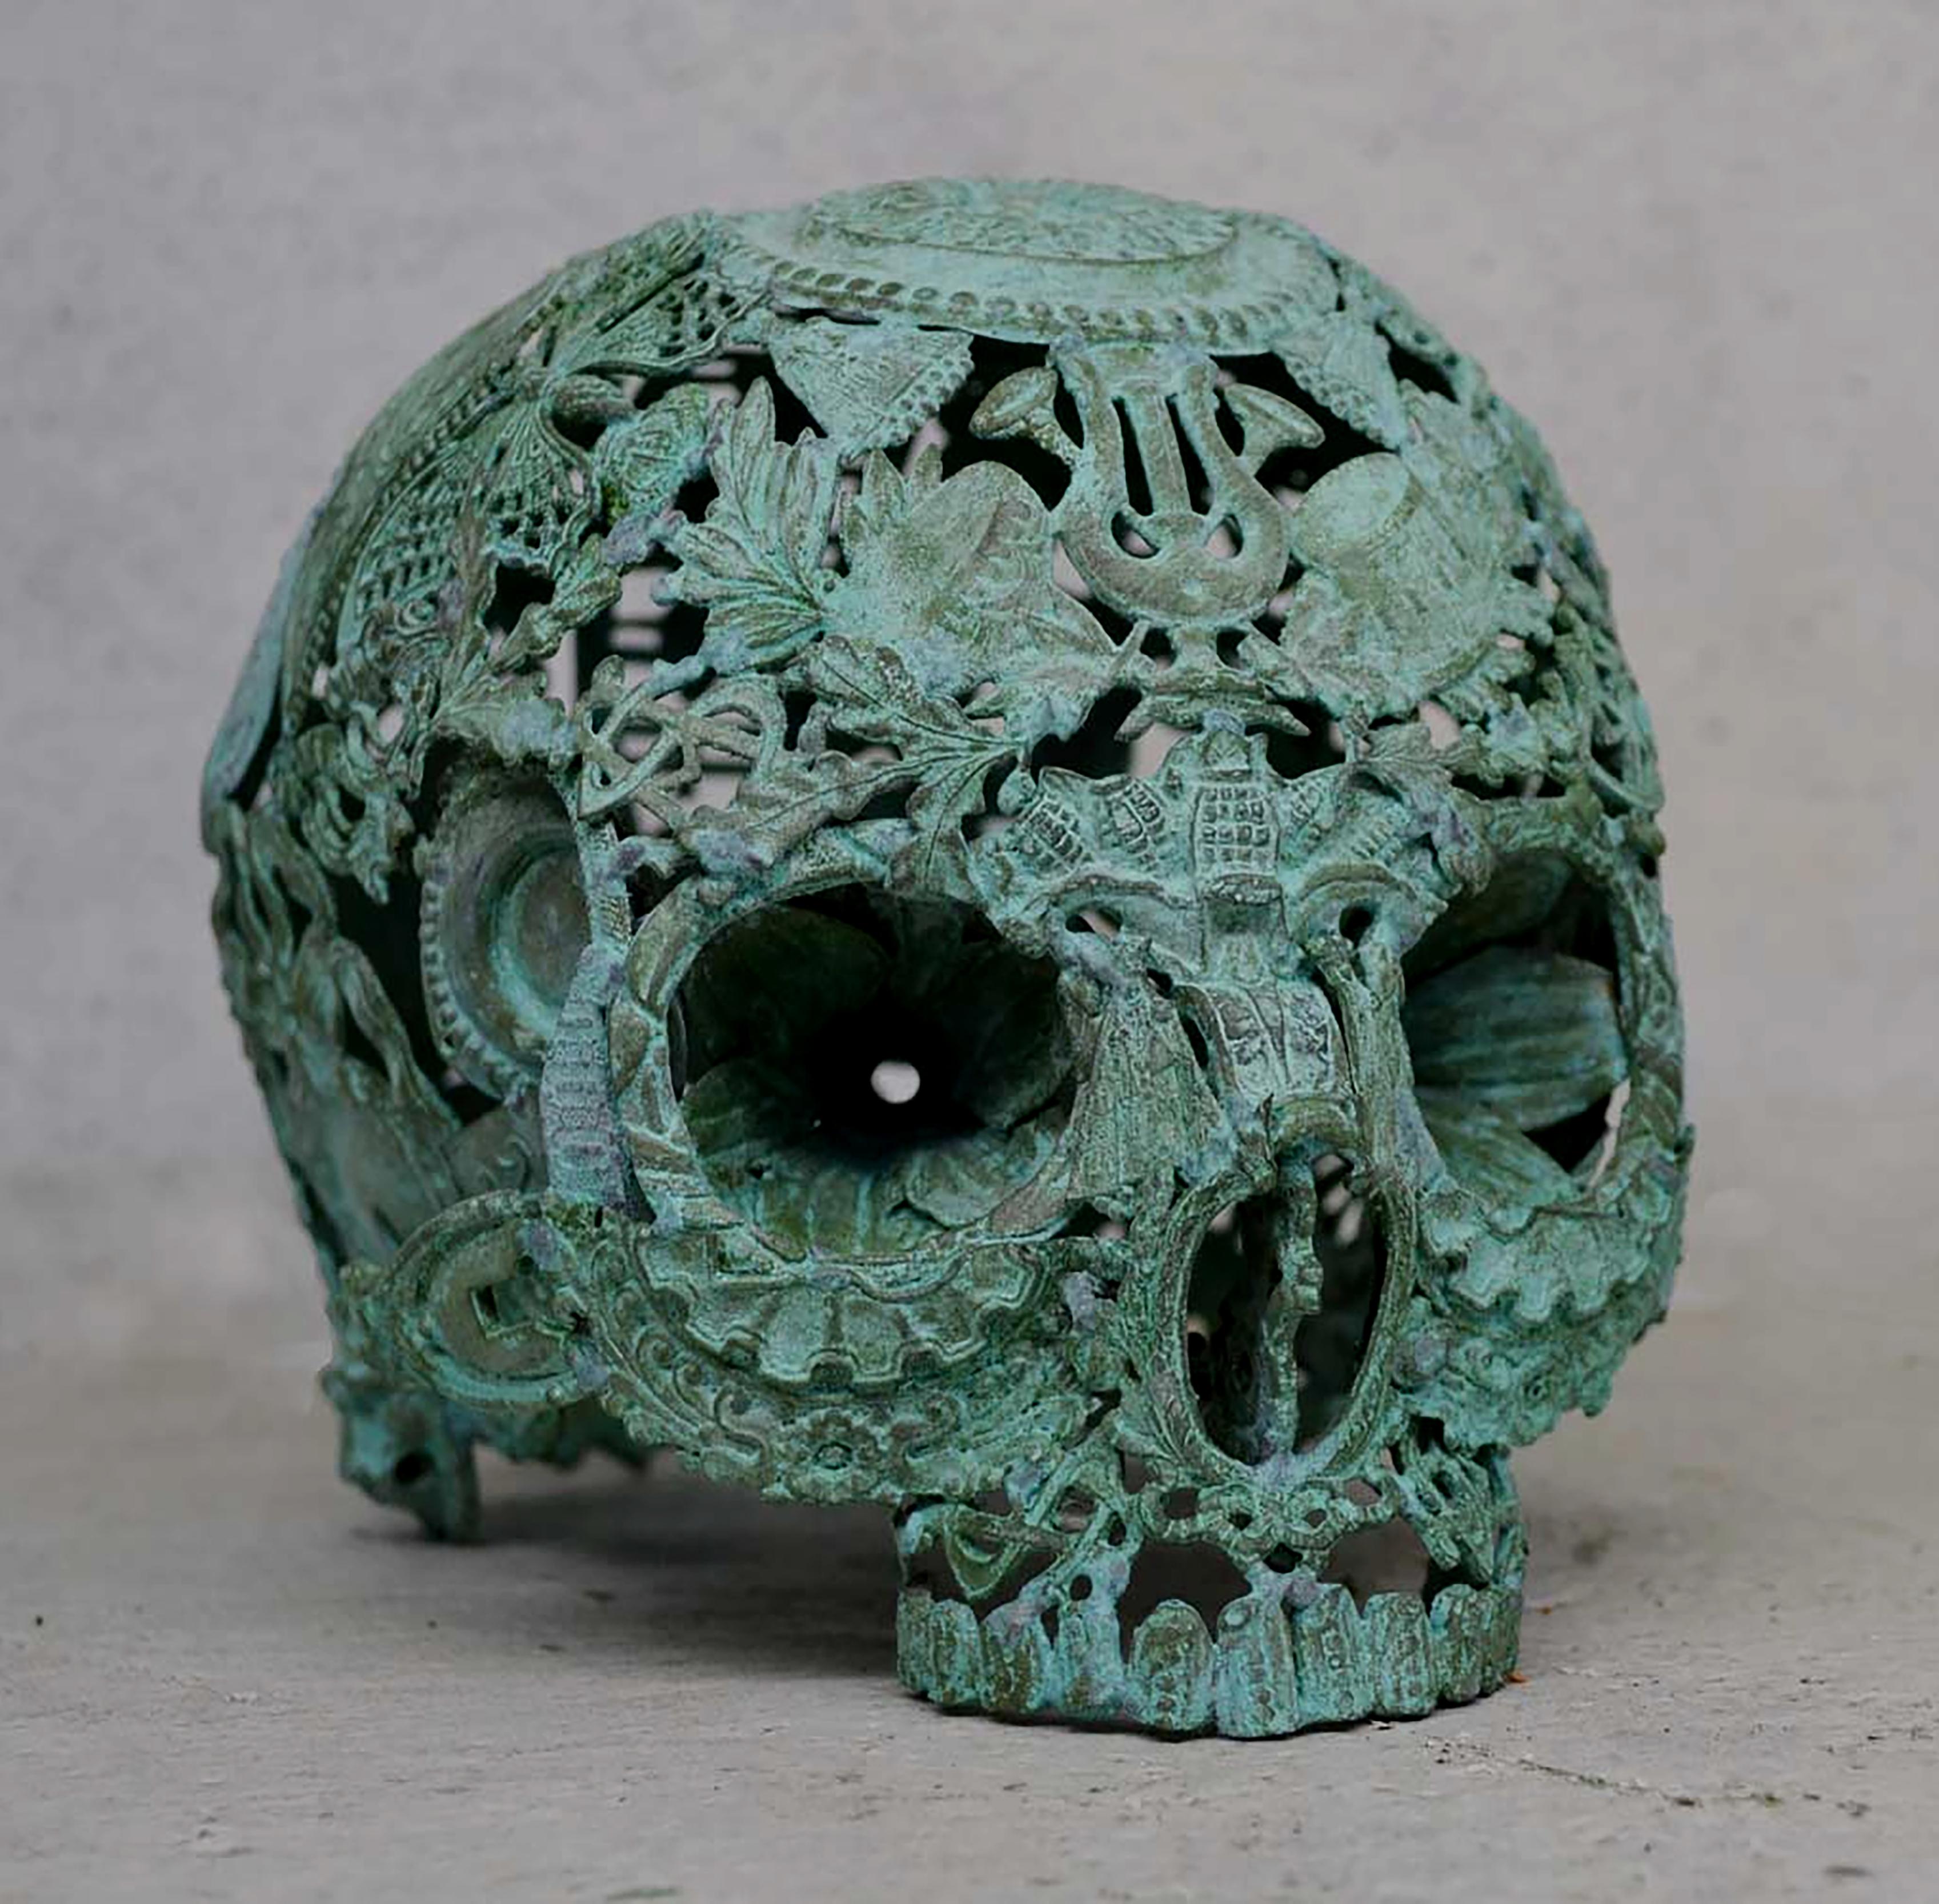 Vert de Peur - Skull Bronze Sculpture - Unique Piece